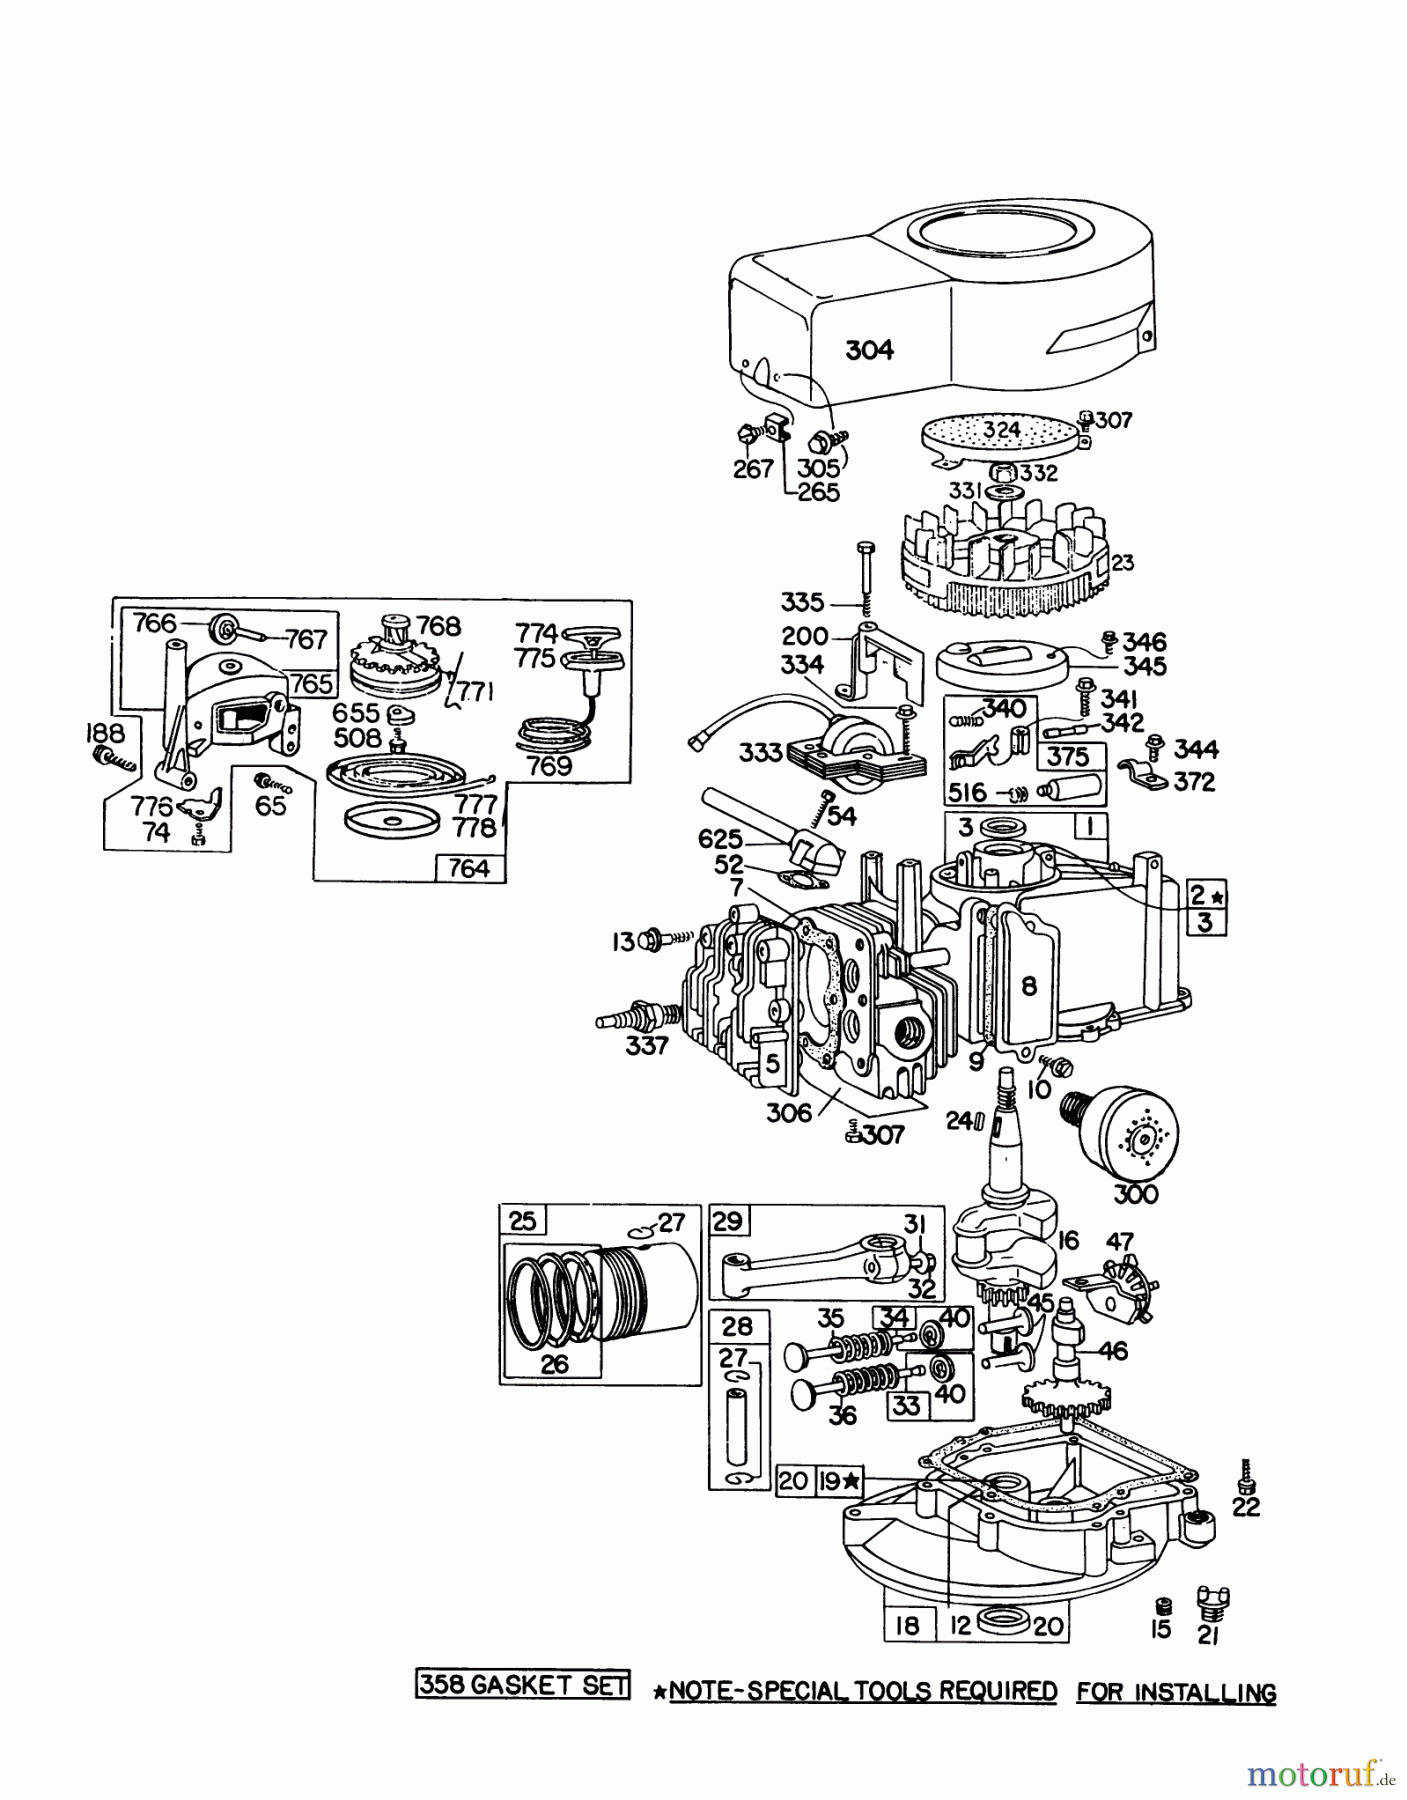  Toro Neu Mowers, Walk-Behind Seite 1 16155 - Toro Whirlwind II Lawnmower, 1977 (7000001-7999999) ENGINE BRIGGS & STRATTON MODEL 92908-1736-01 FOR 21